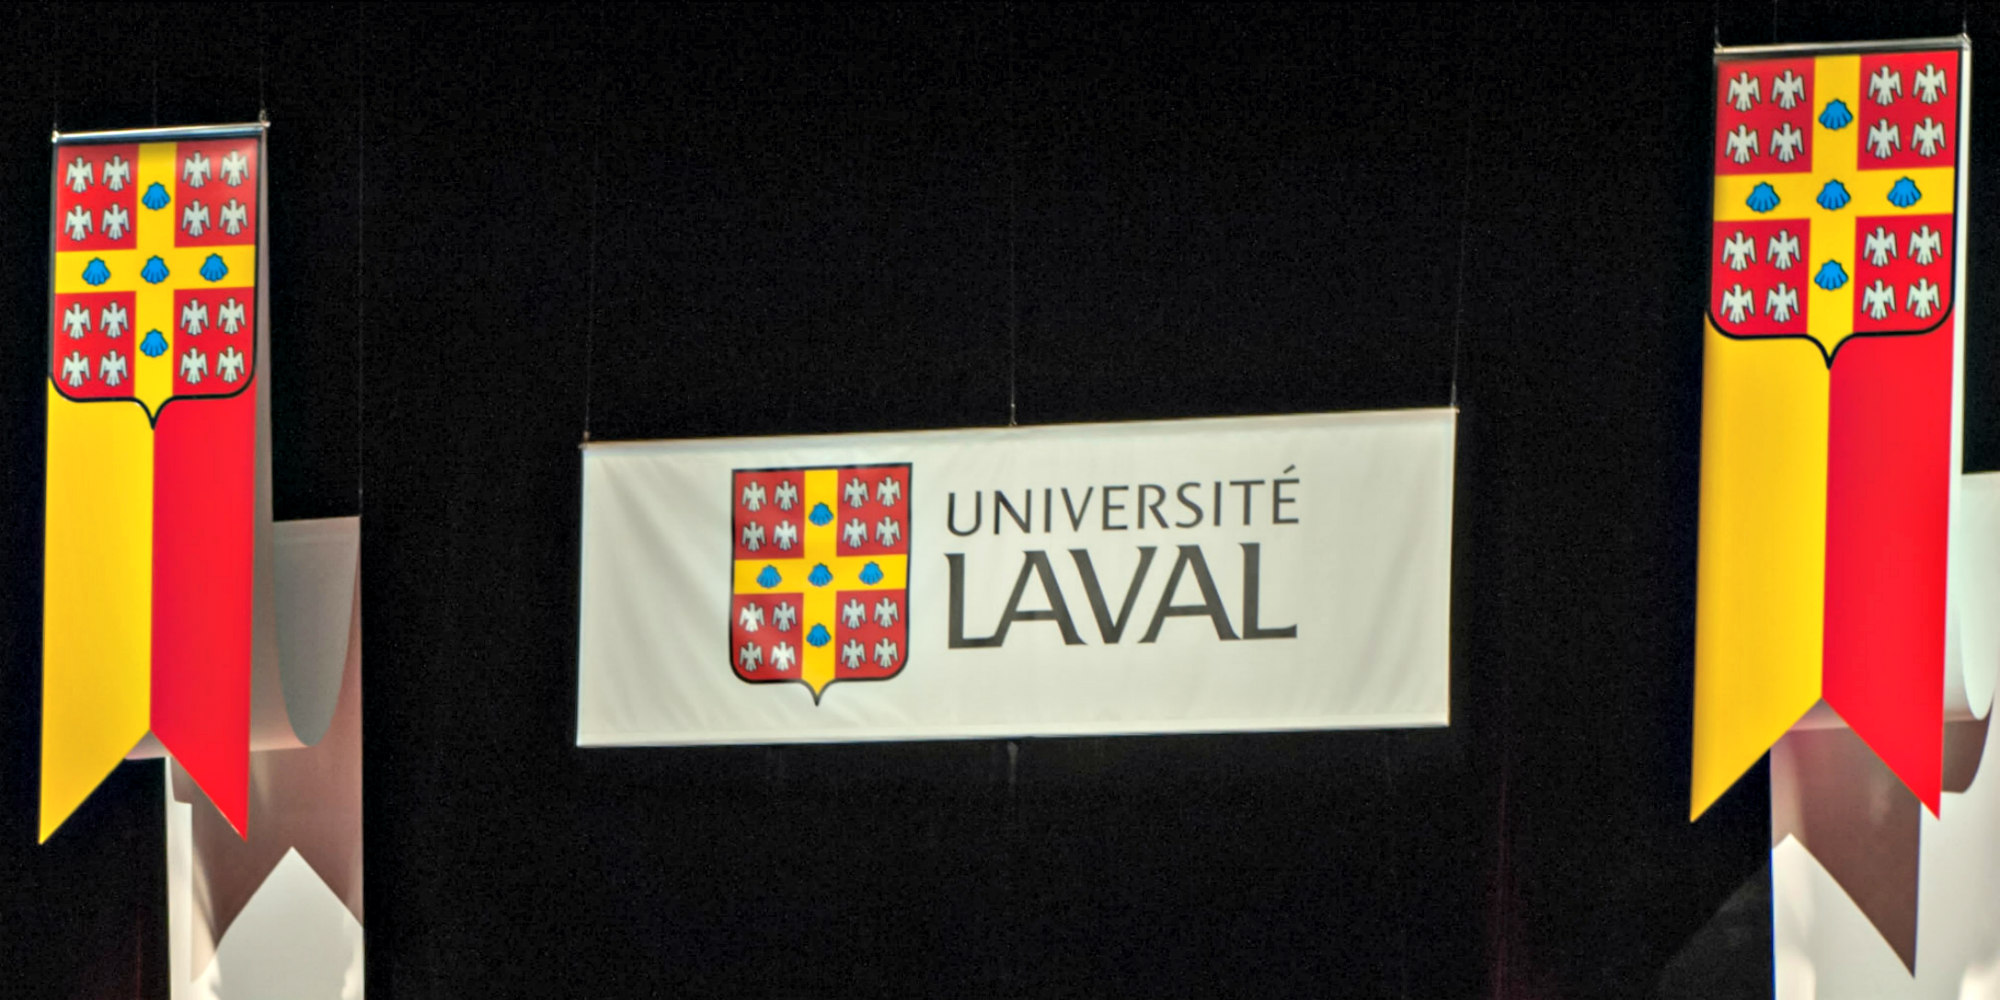 université laval logo drapeau